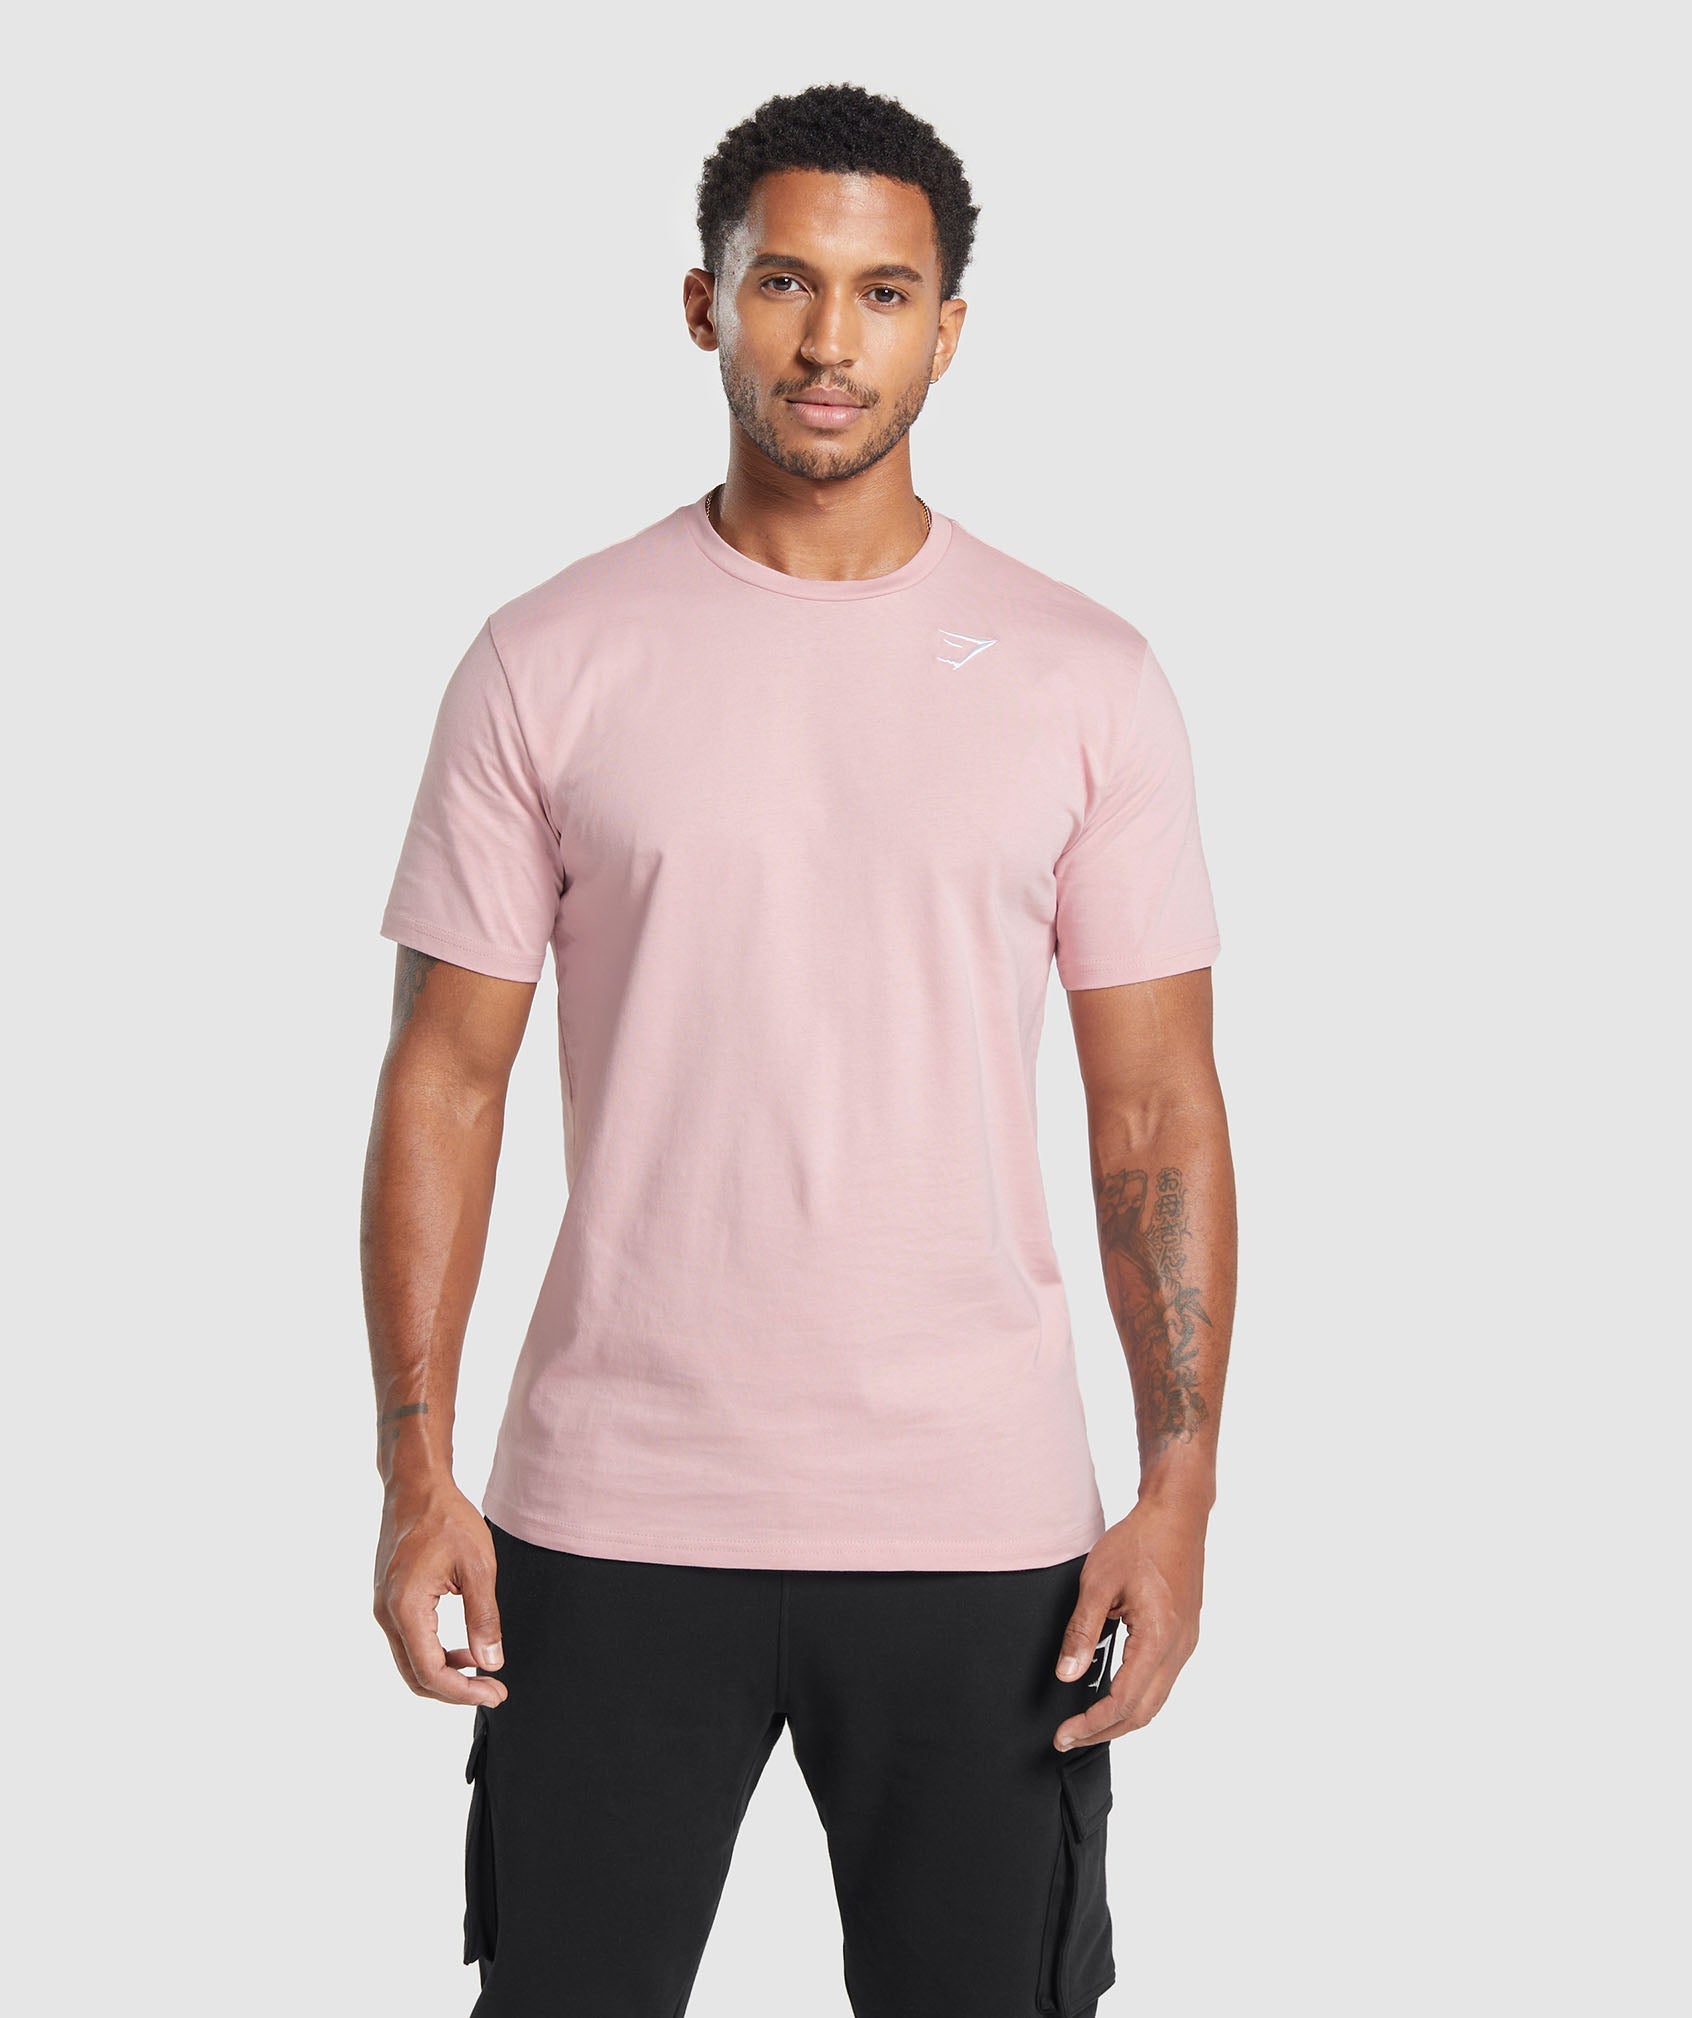 Crest T-Shirt en Light Pink